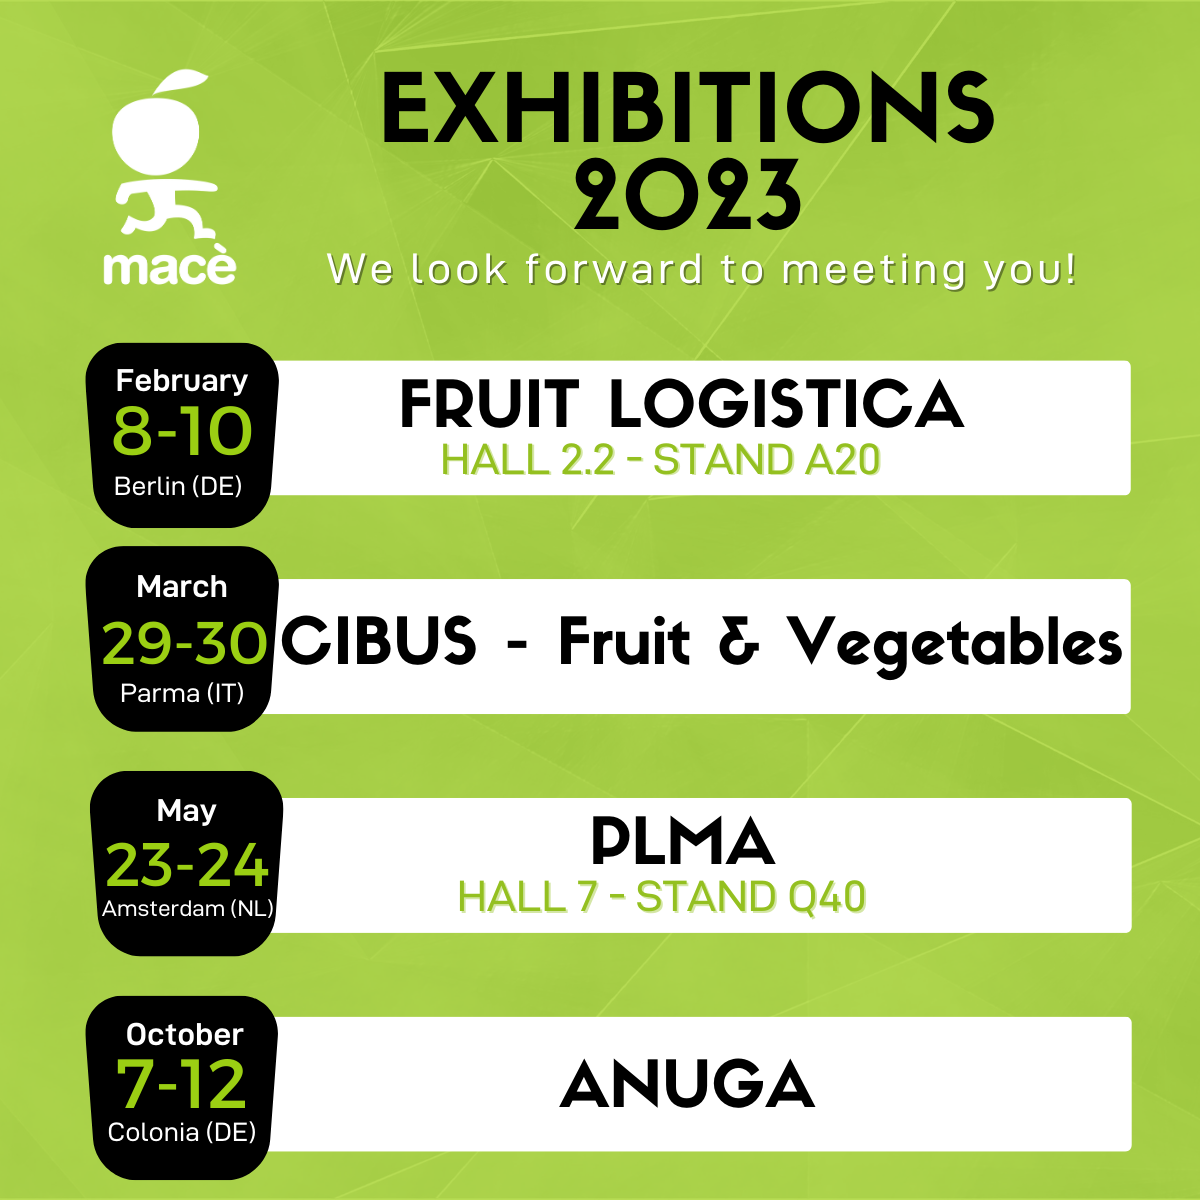 Calendrier des foires 2023 auxquelles Macé participe : logistique des fruits 8-10 février, Cibus 29-30 mars, PLMA 23-24 mai, ANUGA 7-12 octobre